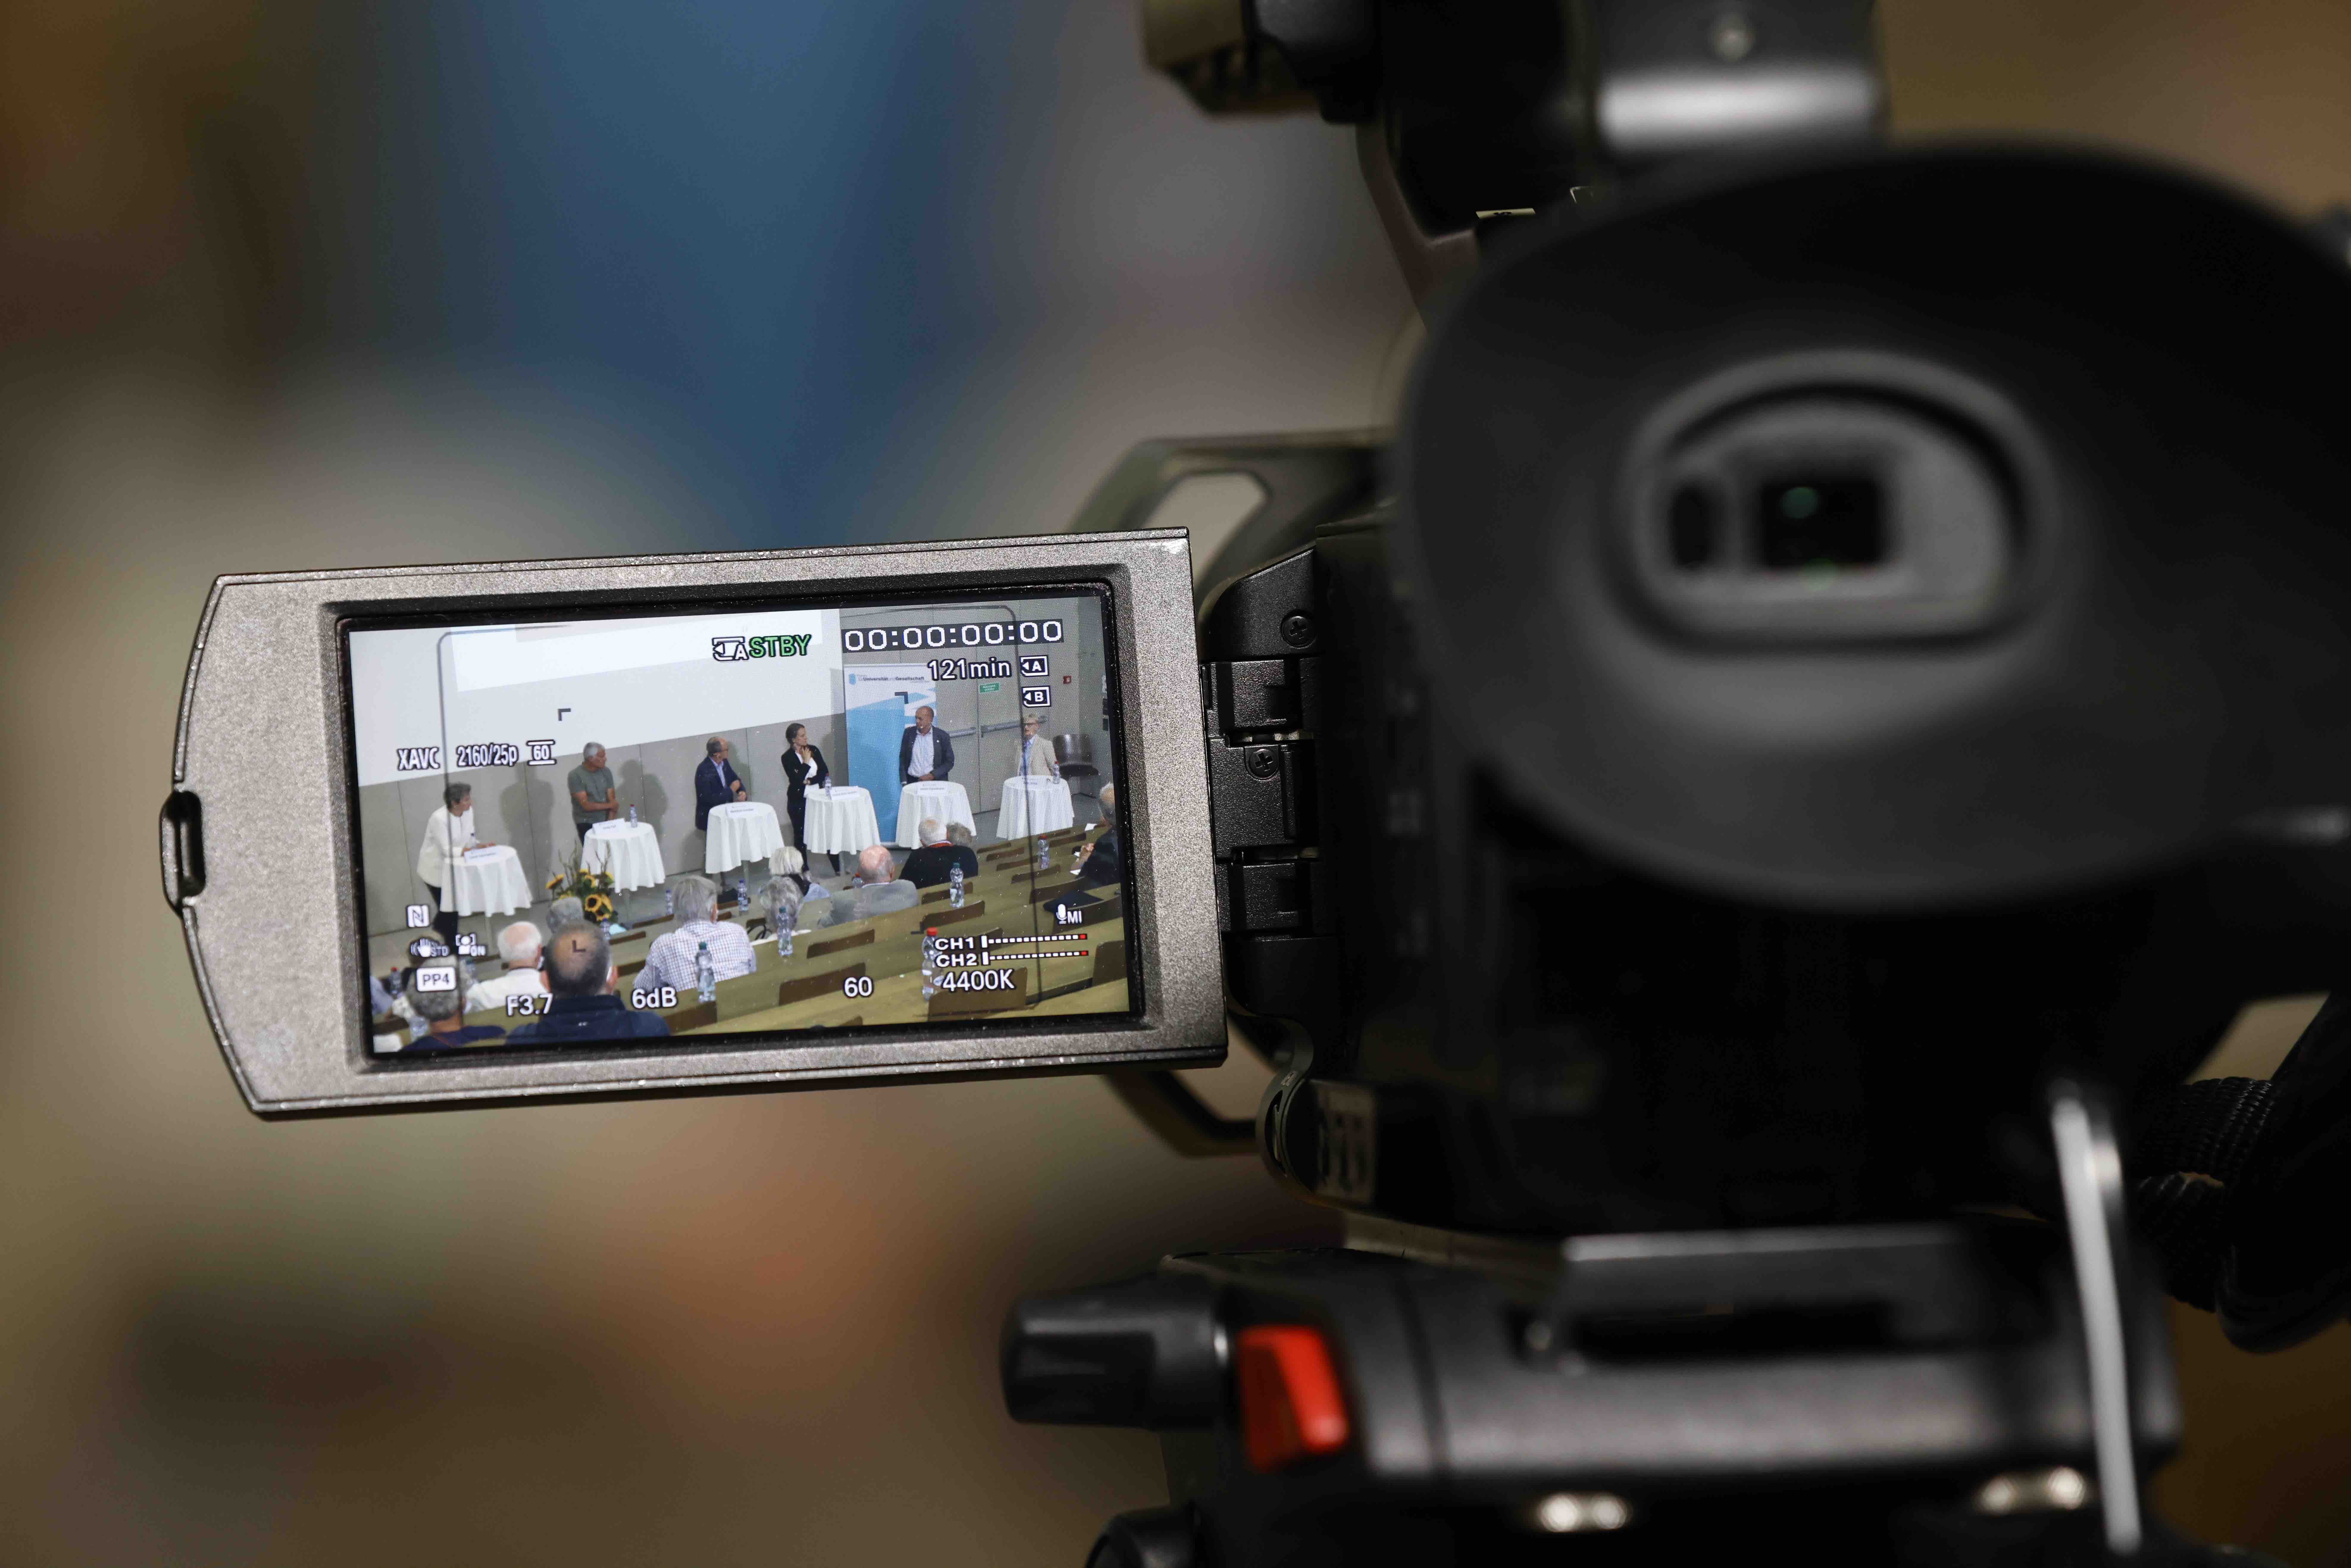 Ein Kamera-Display zeigt die Aufnahme einer Podiumsdiskussion: In einem Hörsaal stehen 6 Menschen an Stehtischen und diskutieren gemeinsam.